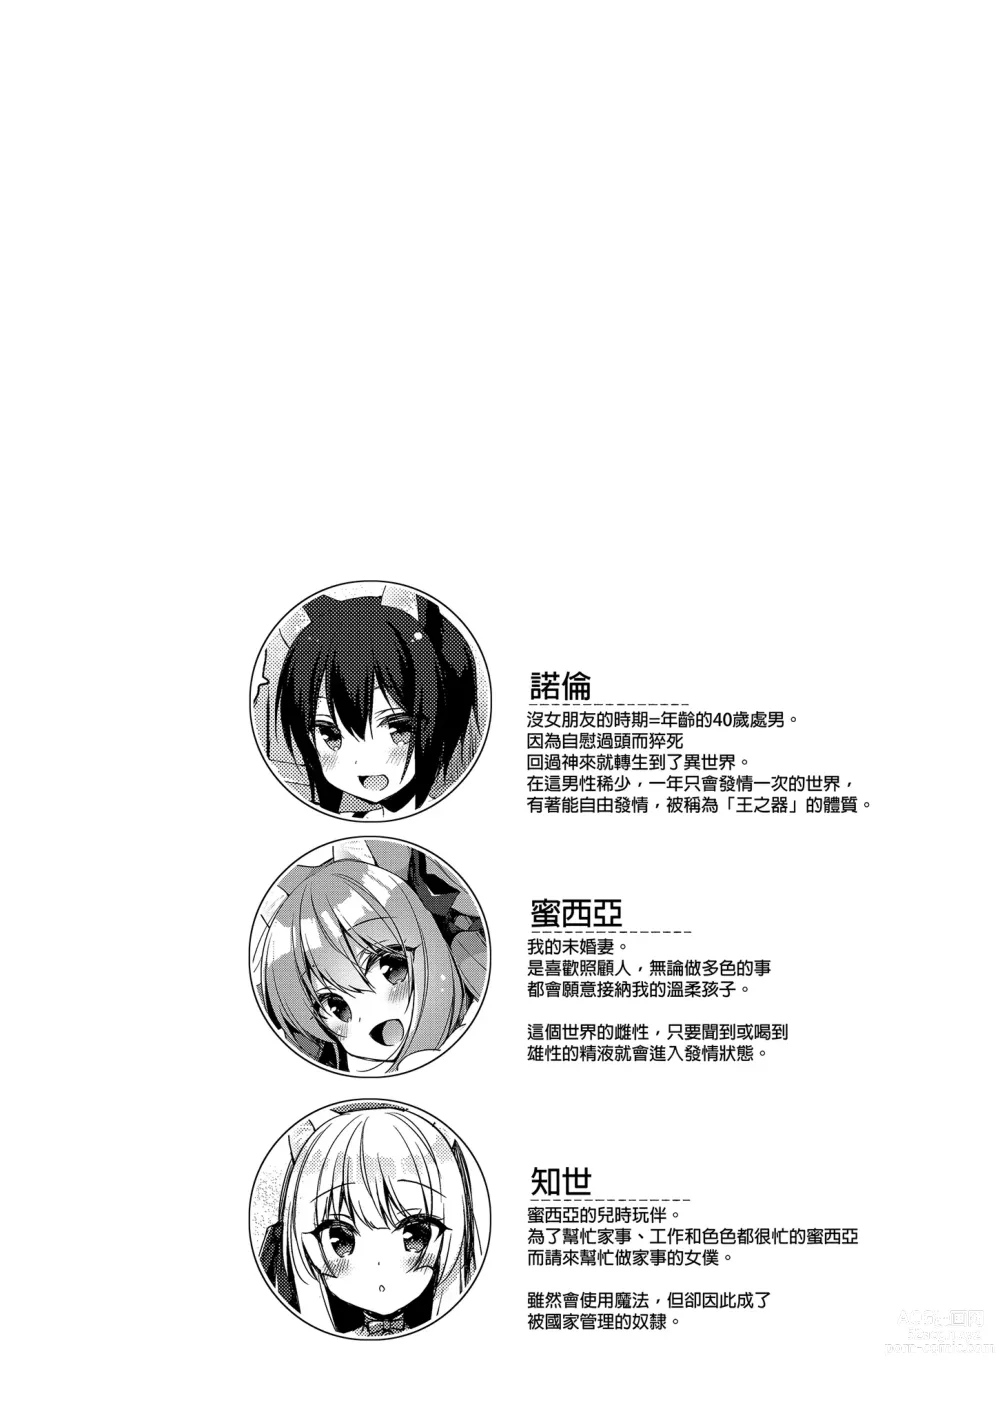 Page 6 of manga Boku no Risou no Isekai Seikatsu Soushuuhen 02 (decensored)